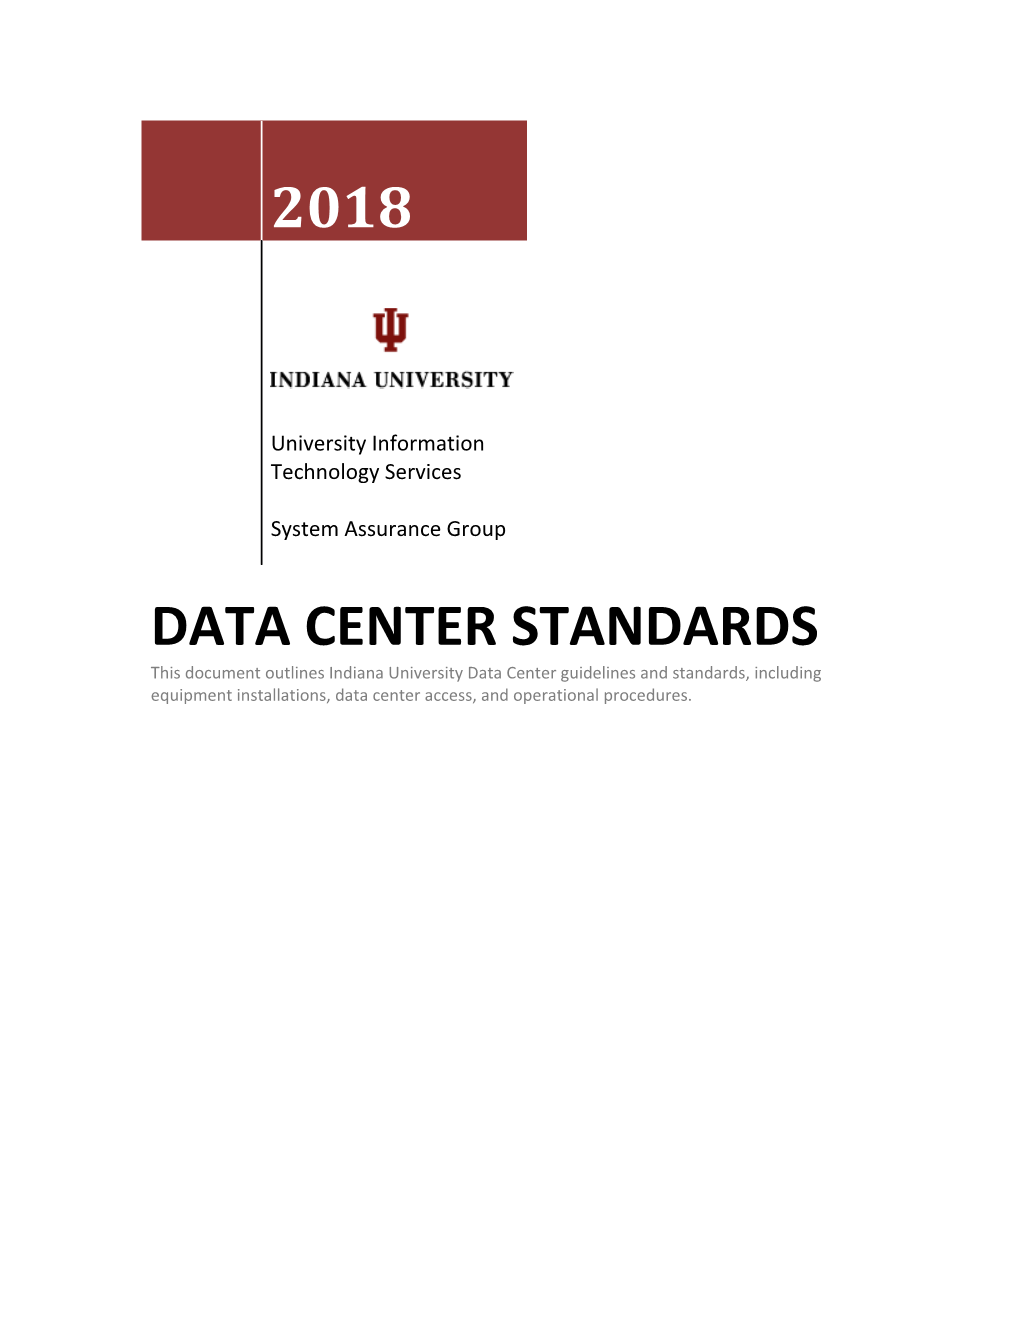 Data Center Standards